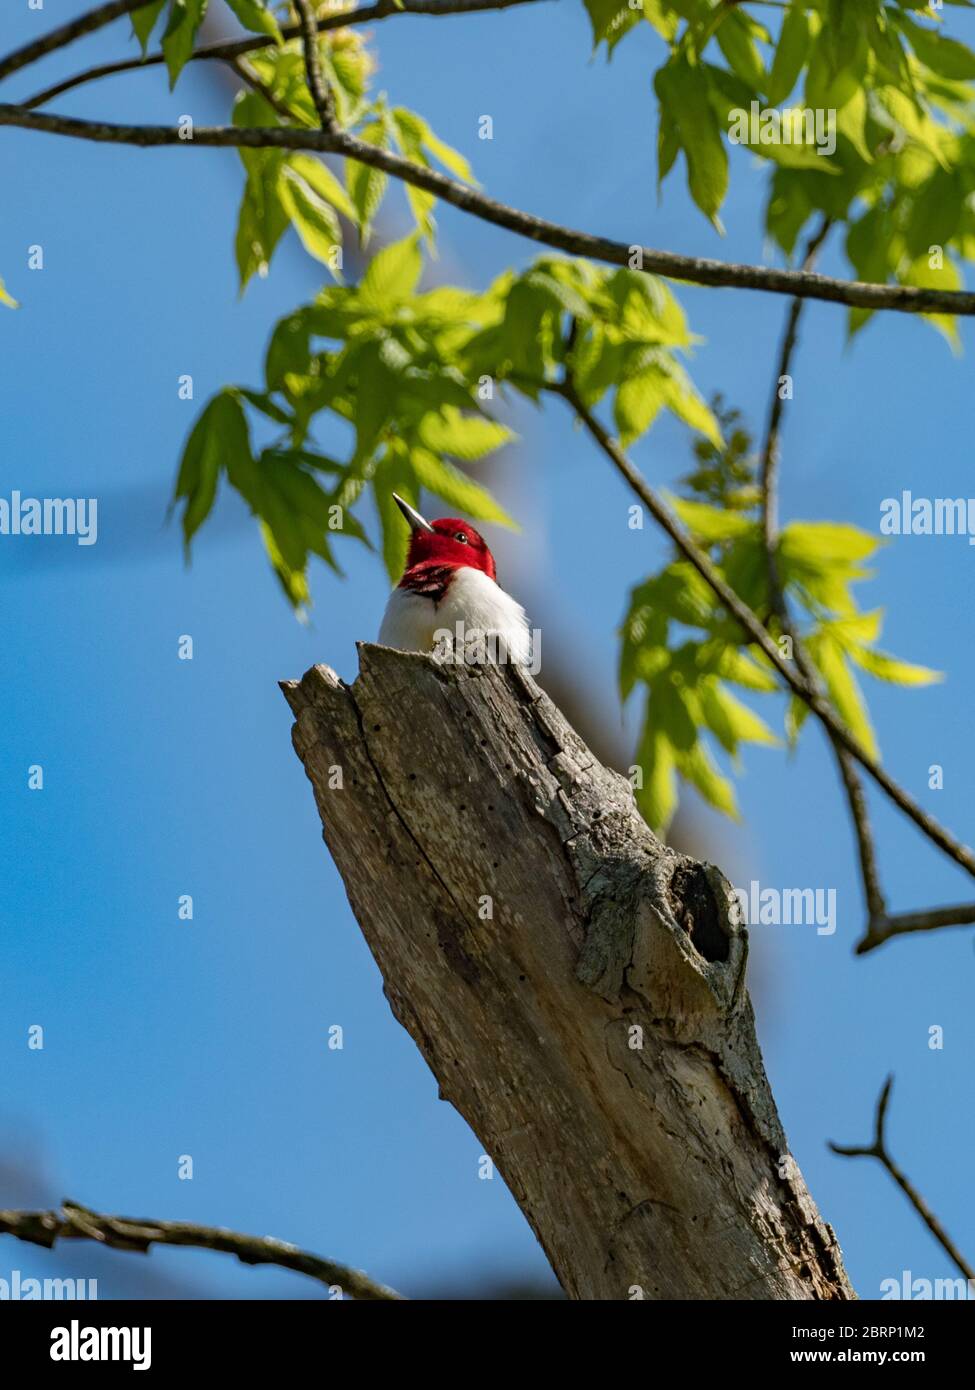 Pájaro carpintero de cabeza roja, Melanerpes erythrocephalus, un pájaro carpintero precioso que se encuentra en los bosques del este de Norteamérica Foto de stock